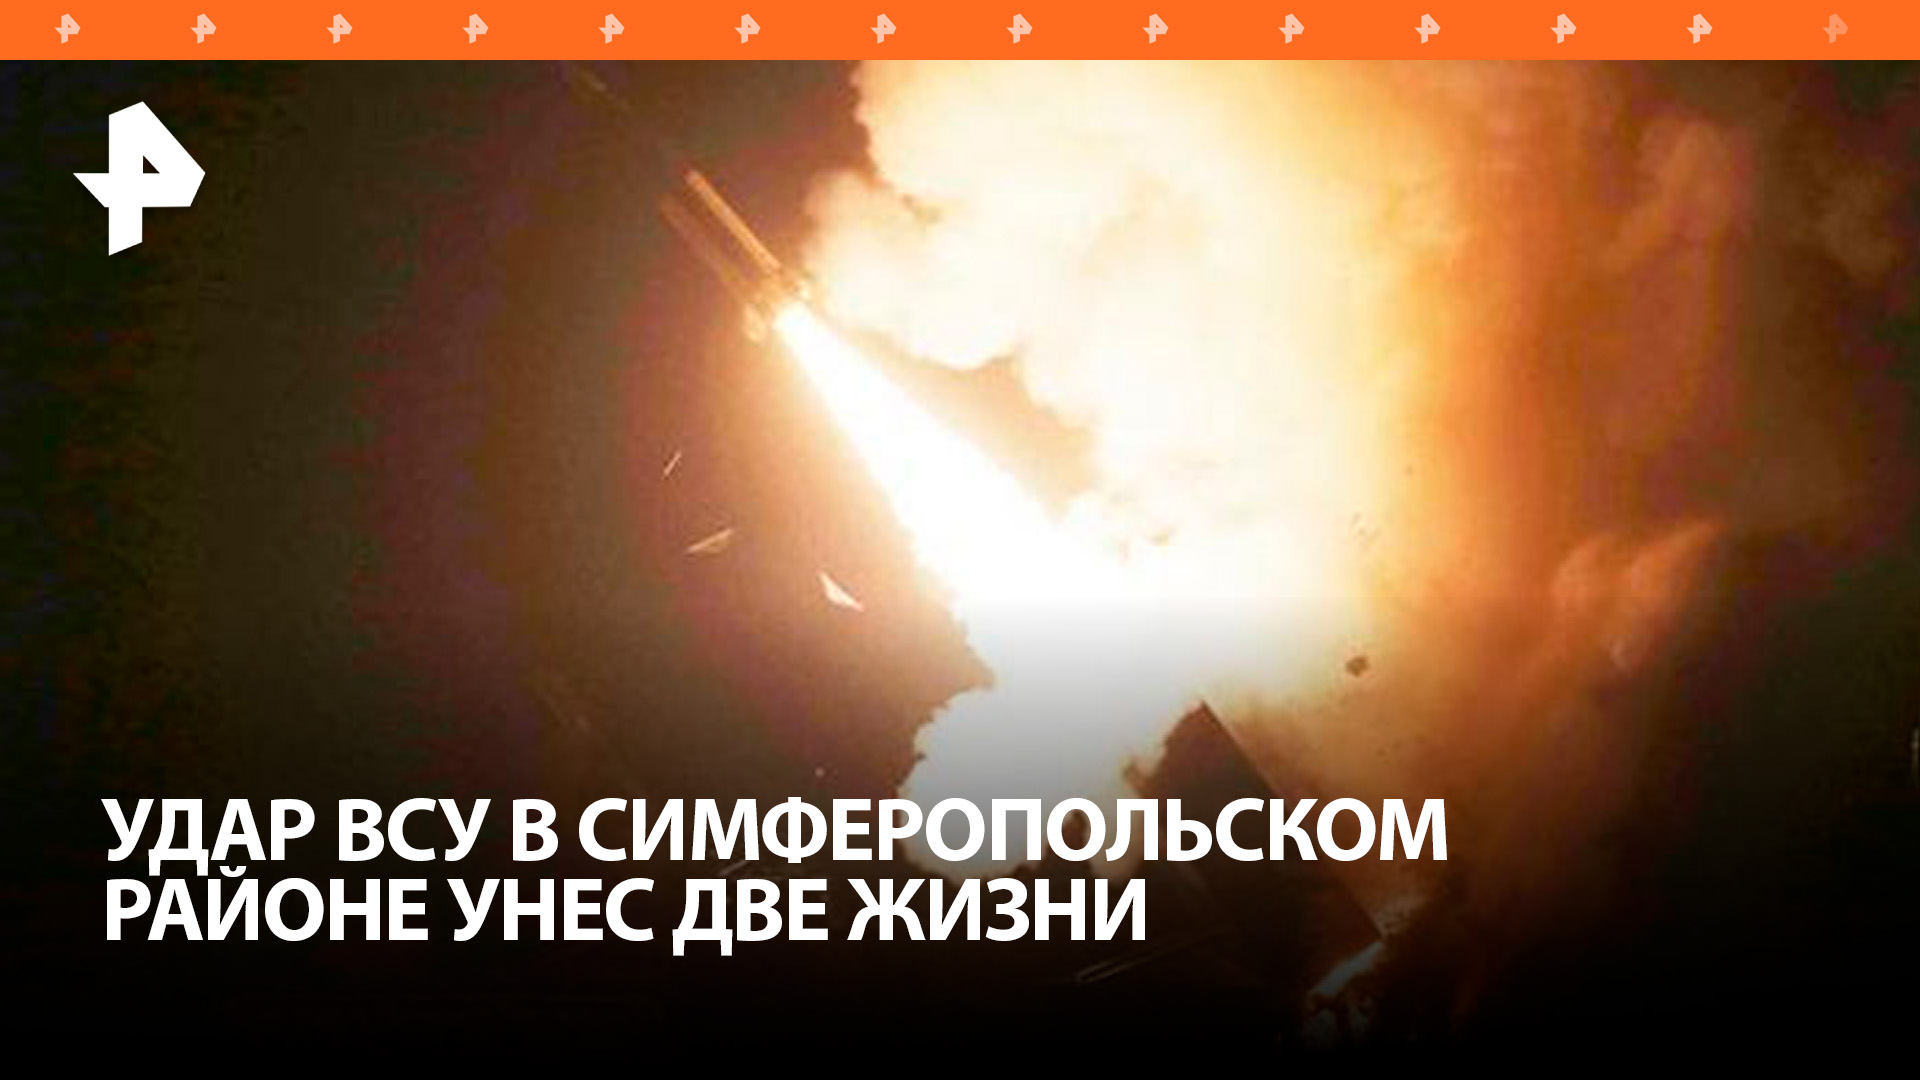 Два жителя Крыма погибли во время ракетной атаки ВСУ / РЕН Новости